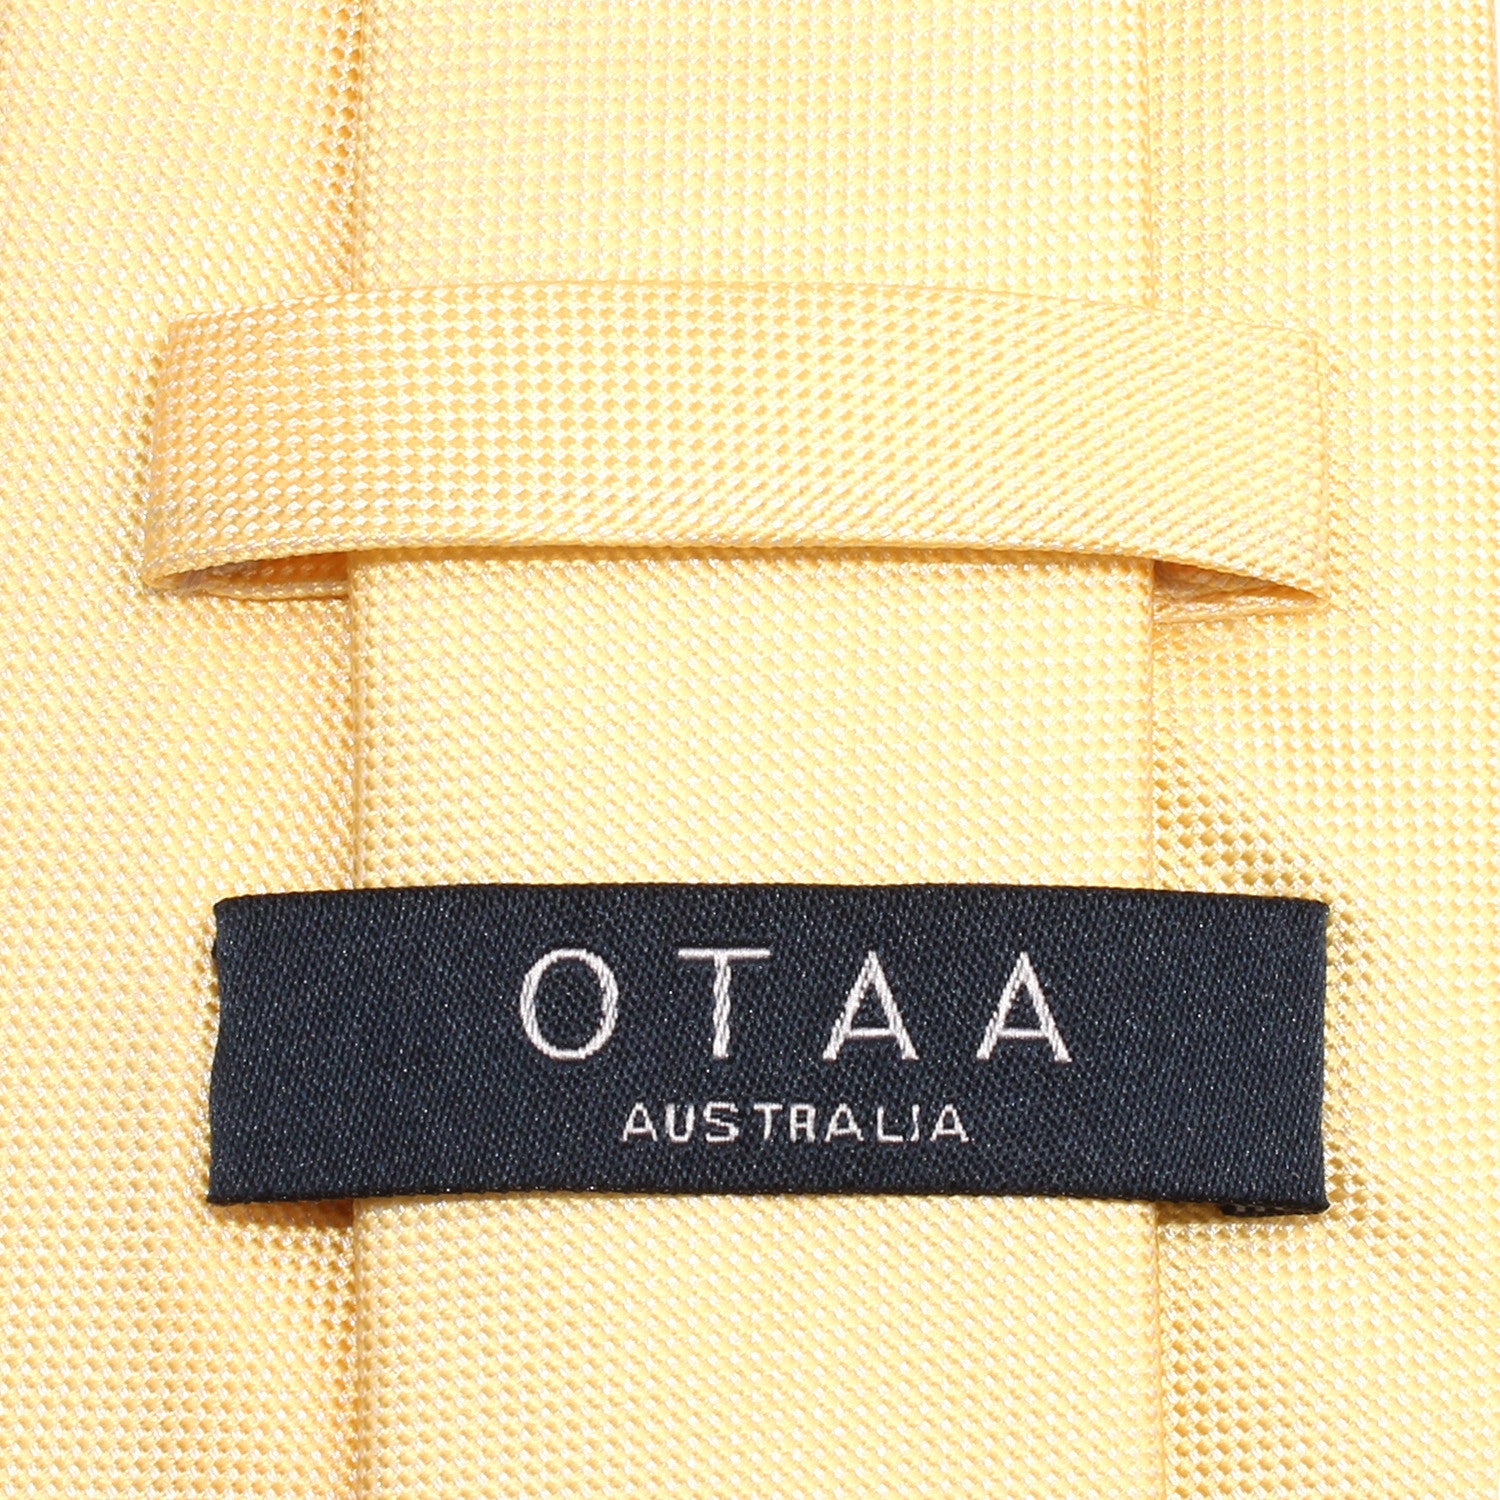 Light Yellow Skinny Tie OTAA Australia